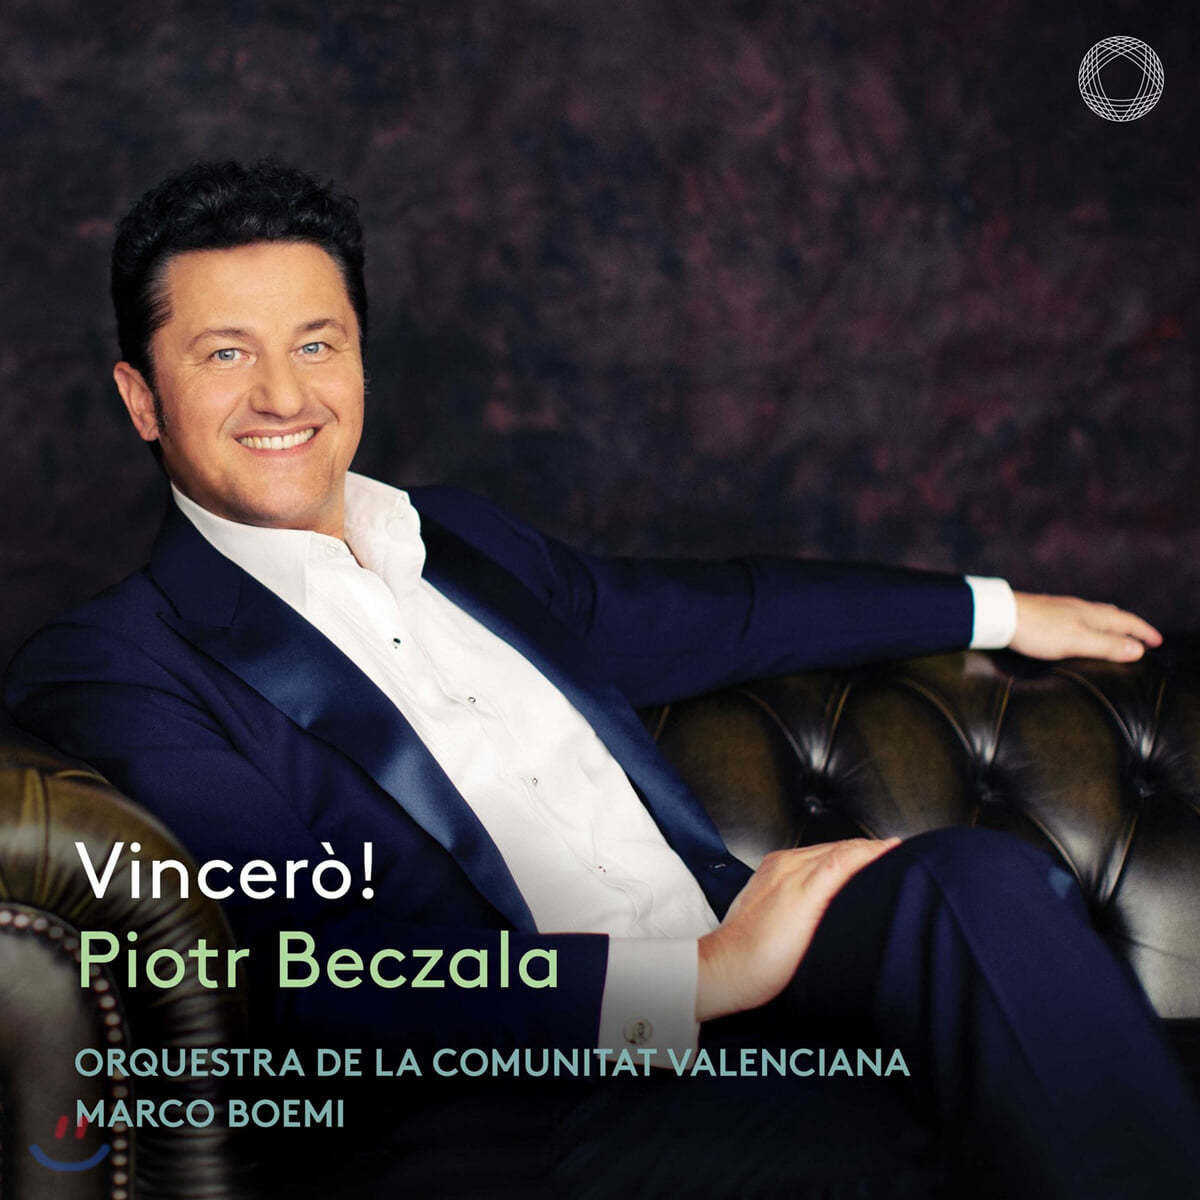 Piotr Beczala 표트르 베찰라가 부르는 이탈리아 오페라 아리아 모음집 (Vincero!)